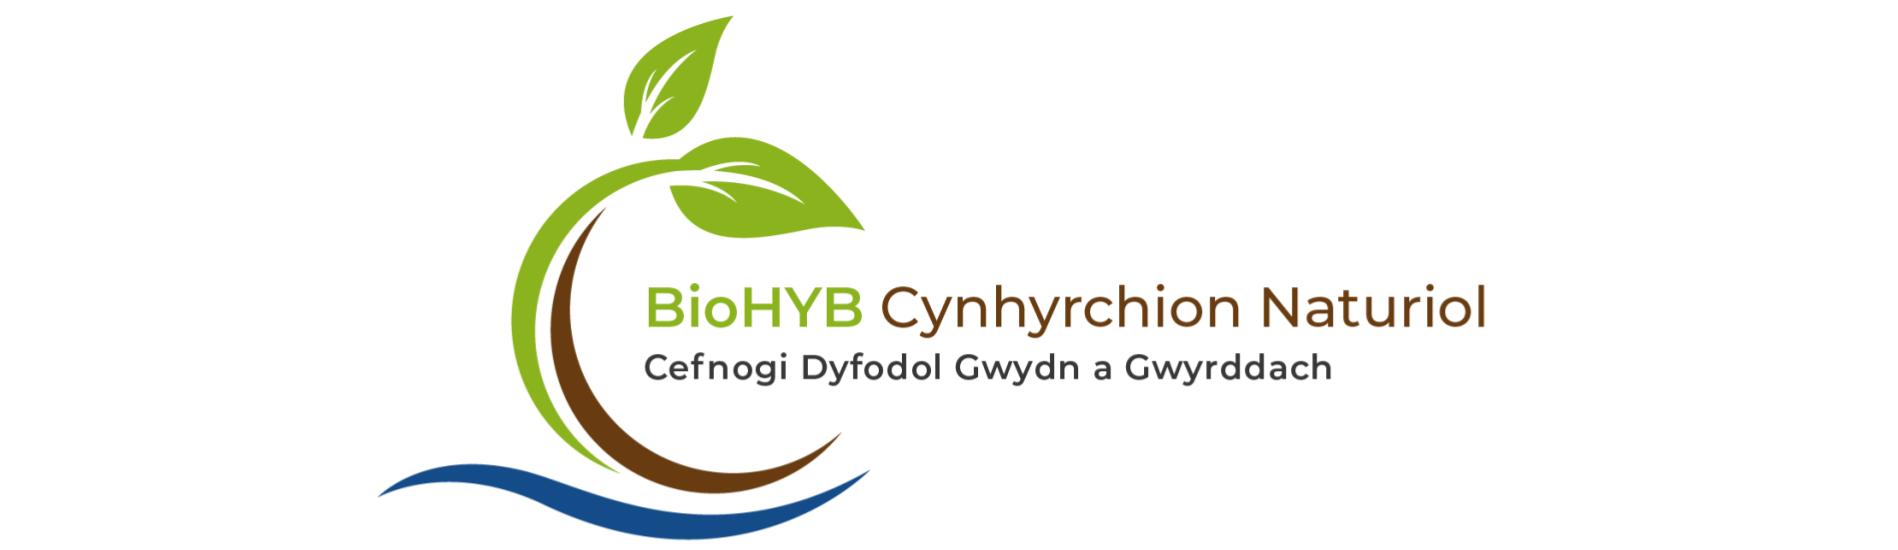 BioHUB logo 